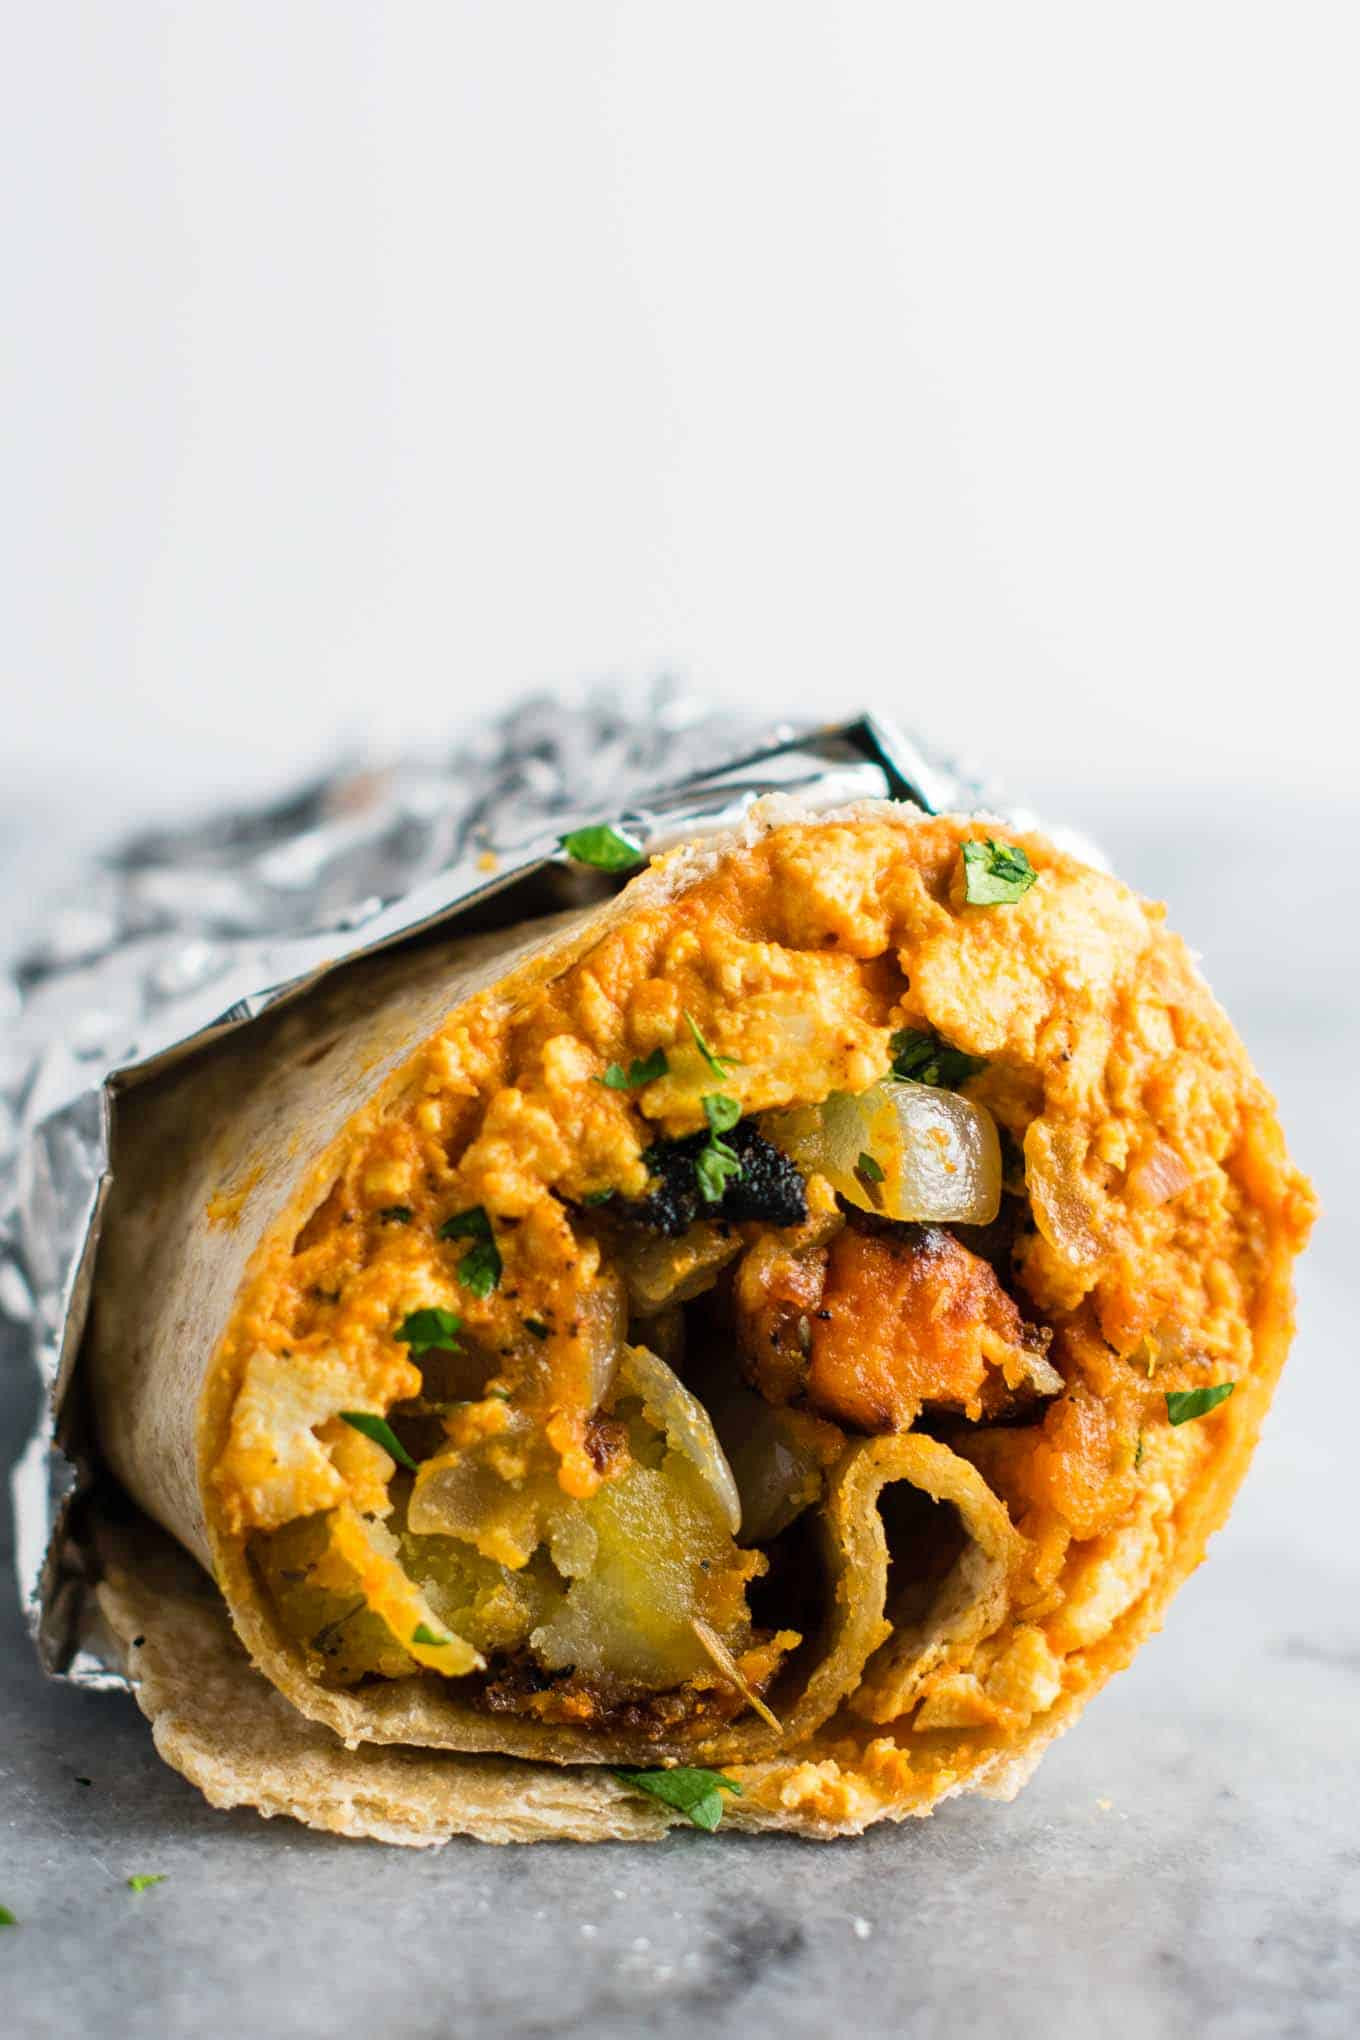 Best Breakfast Burrito Recipe Unique the Best Vegan Breakfast Burrito Recipe Build Your Bite